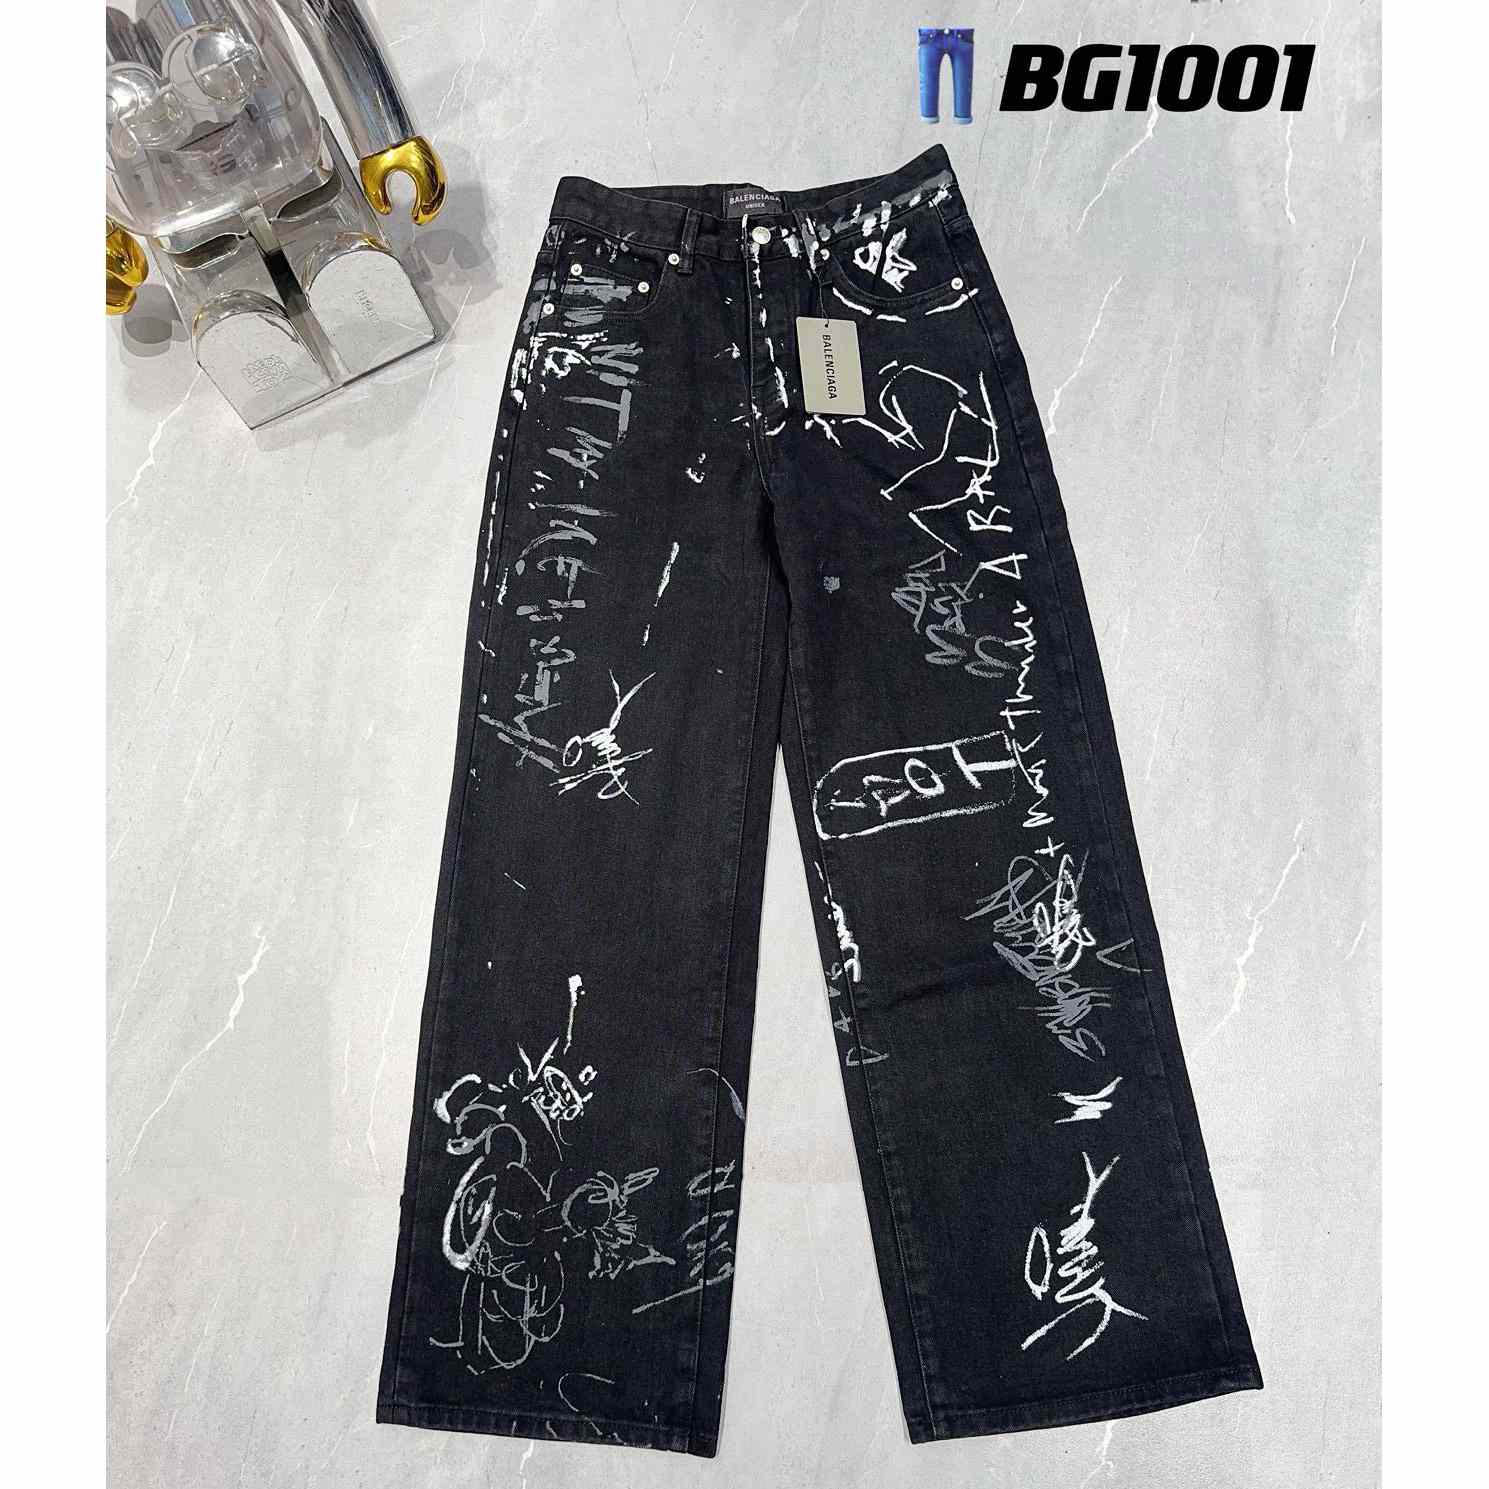 Balenciaga Jeans   BG1001 - everydesigner